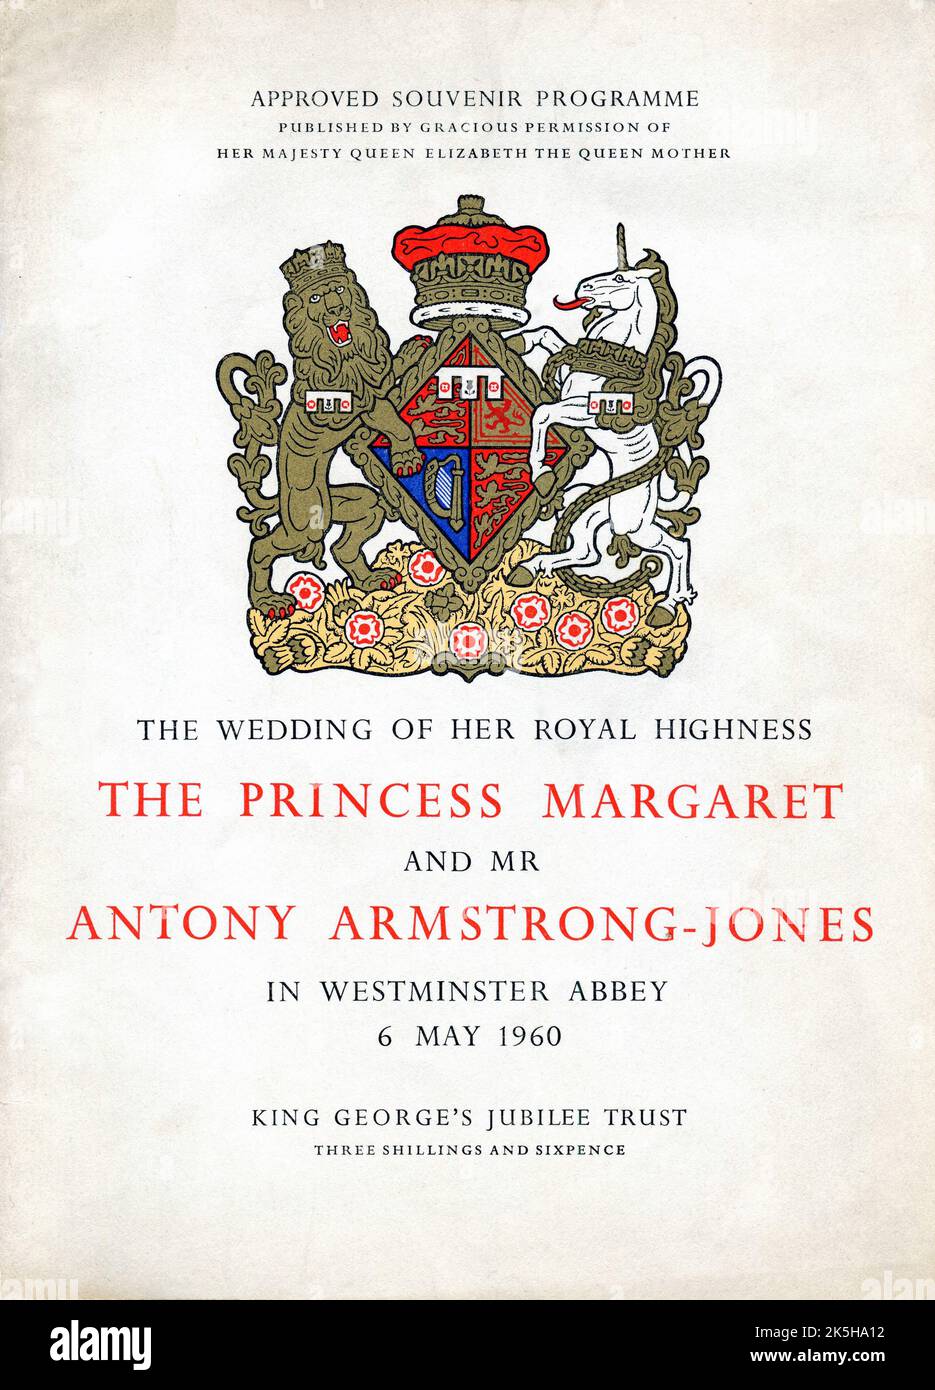 La copertina del programma di souvenir approvato di “il matrimonio di sua altezza reale la principessa Margaret e il signor Antony Armstong-Jones nell’Abbazia di Westminster, 6 maggio 1960”. Foto Stock